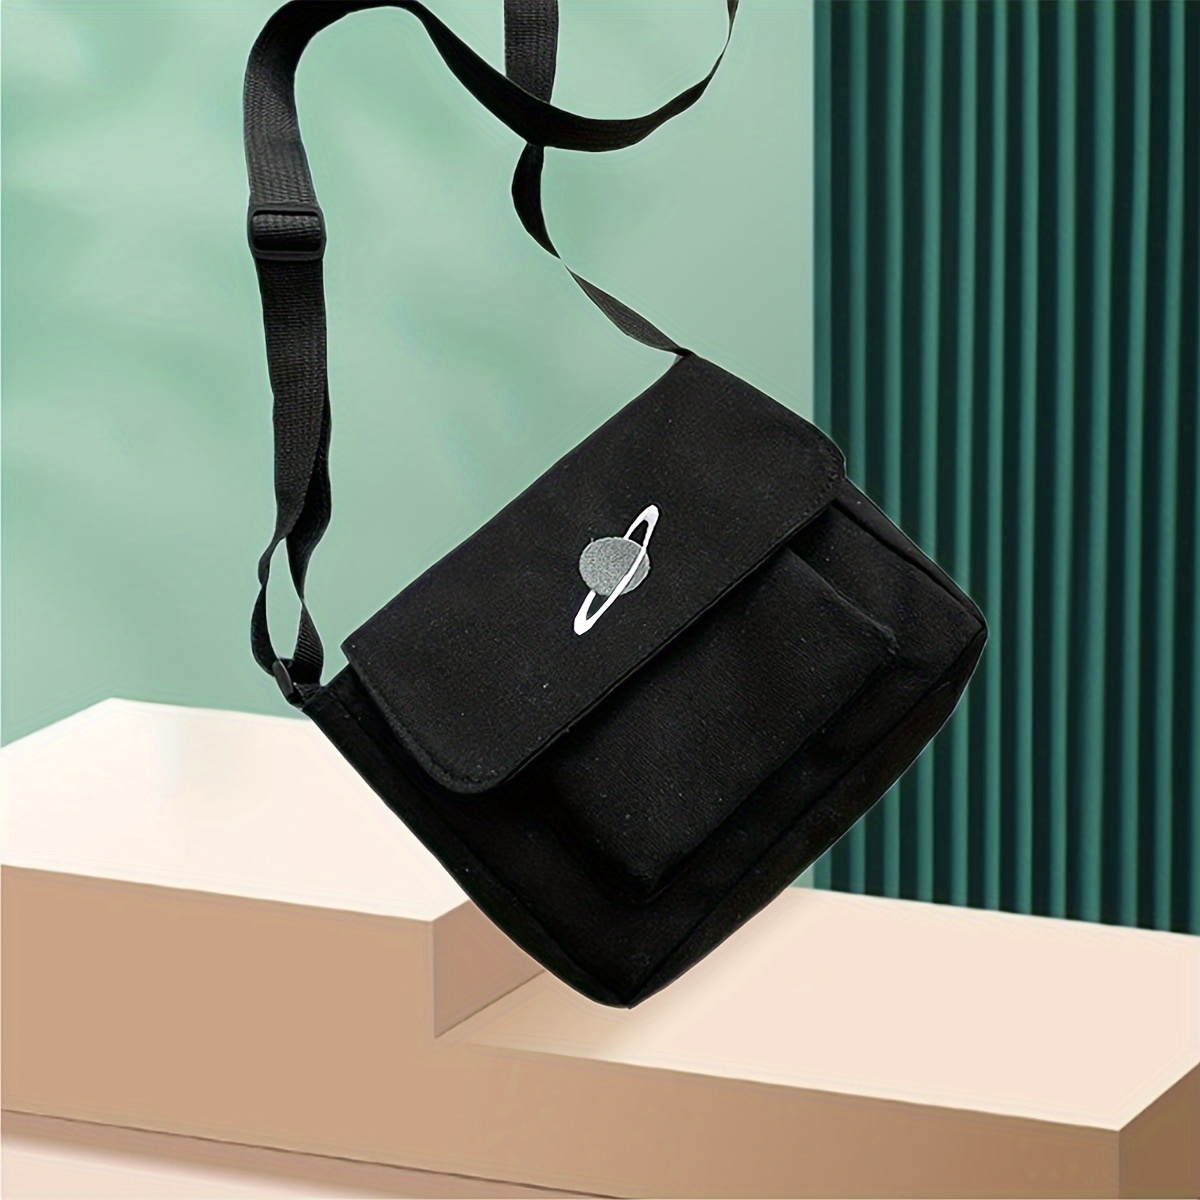 

Casual Canvas Messenger Bag | Crossbody Bag For Students | Single Shoulder Satchel | Black With Planet Design